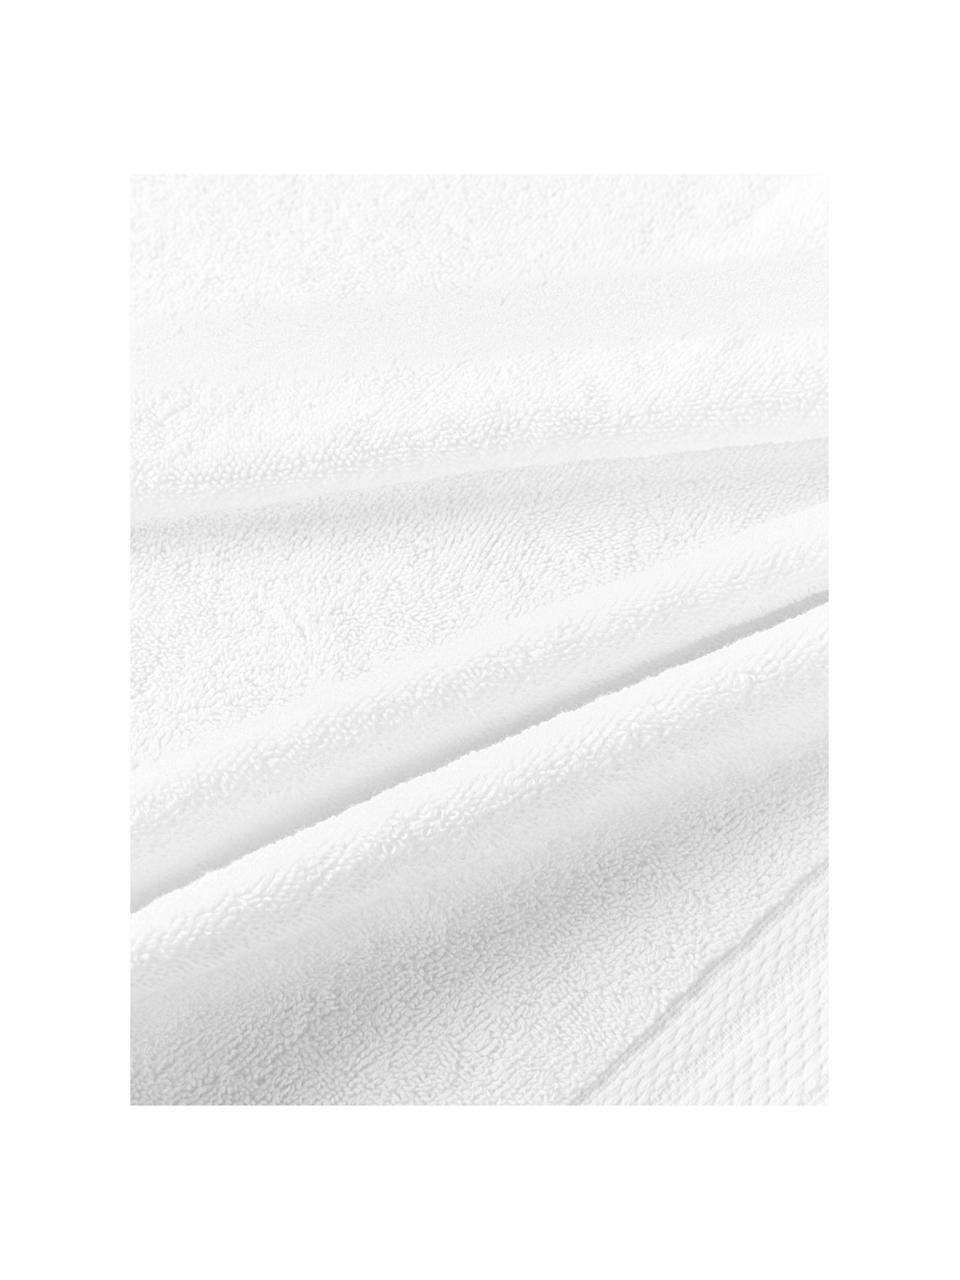 Set de toallas de algodón ecológico Premium, tamaños diferentes, 100% algodón ecológico con certificado GOTS (por GCL International, GCL-300517)
Gramaje superior 600 g/m², Blanco, Set de 4 (toallas lavabo y toallas de ducha)